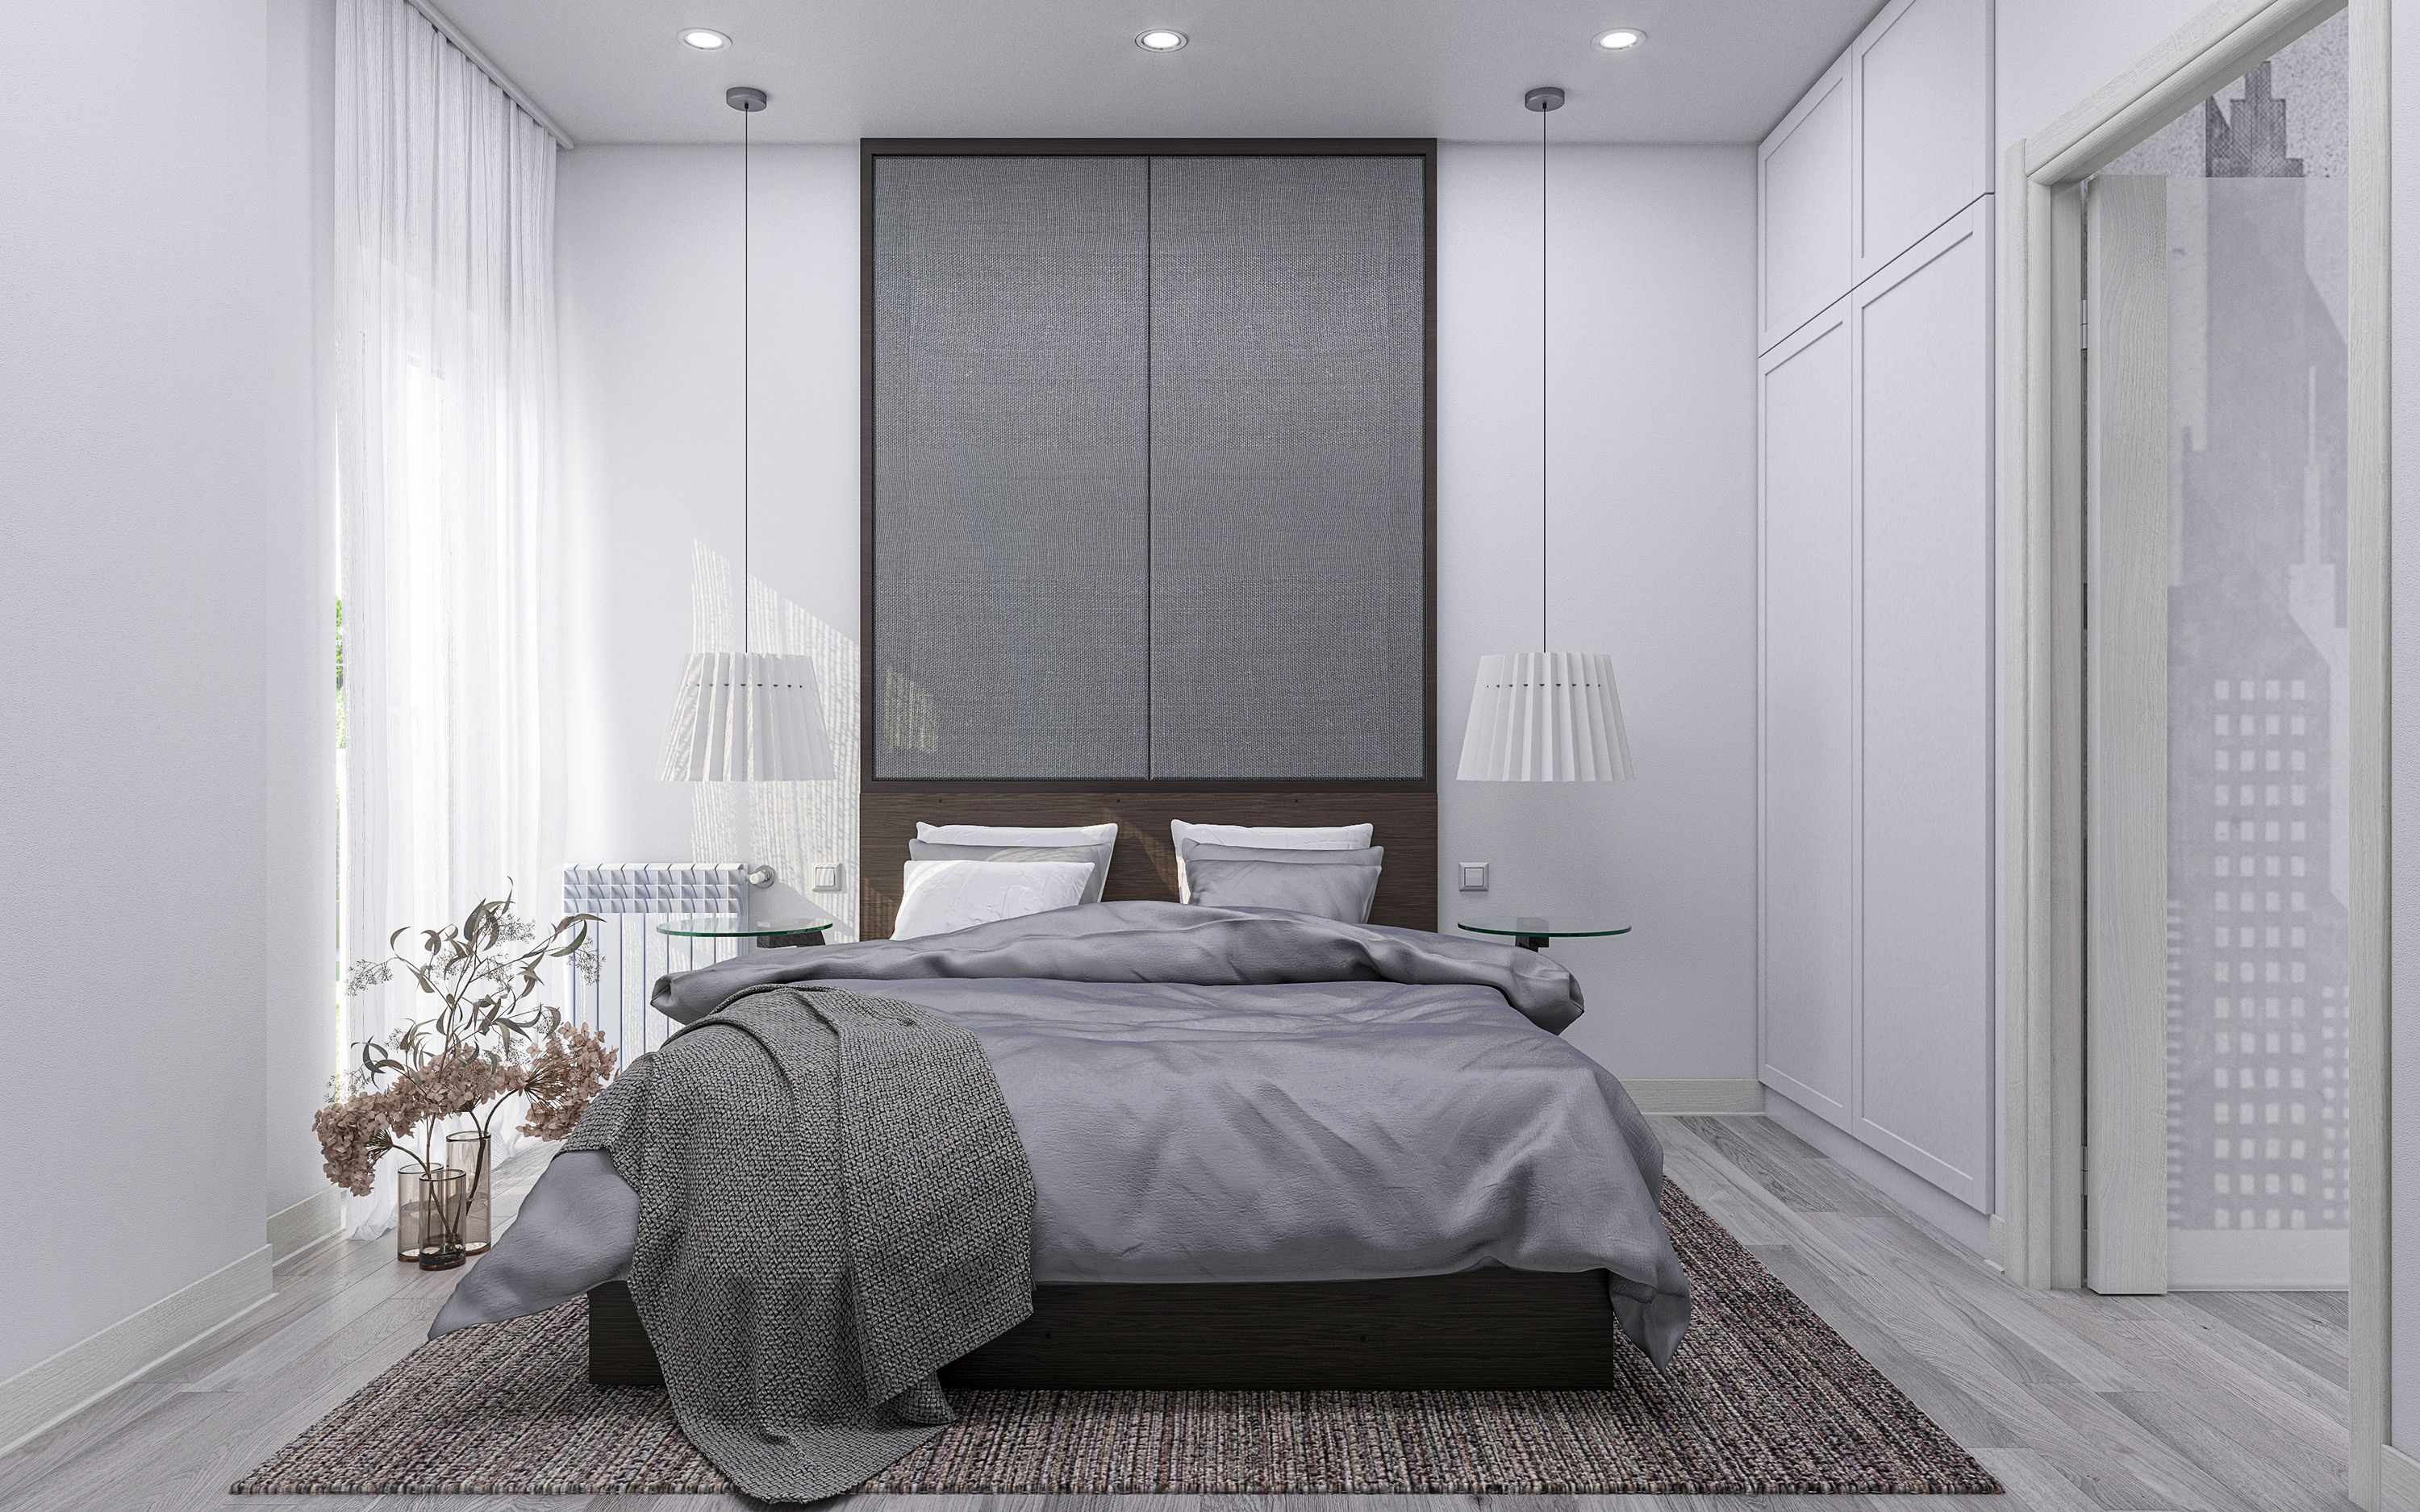 तीन कमरों का अपार्टमेंट S73 3d max corona render में प्रस्तुत छवि